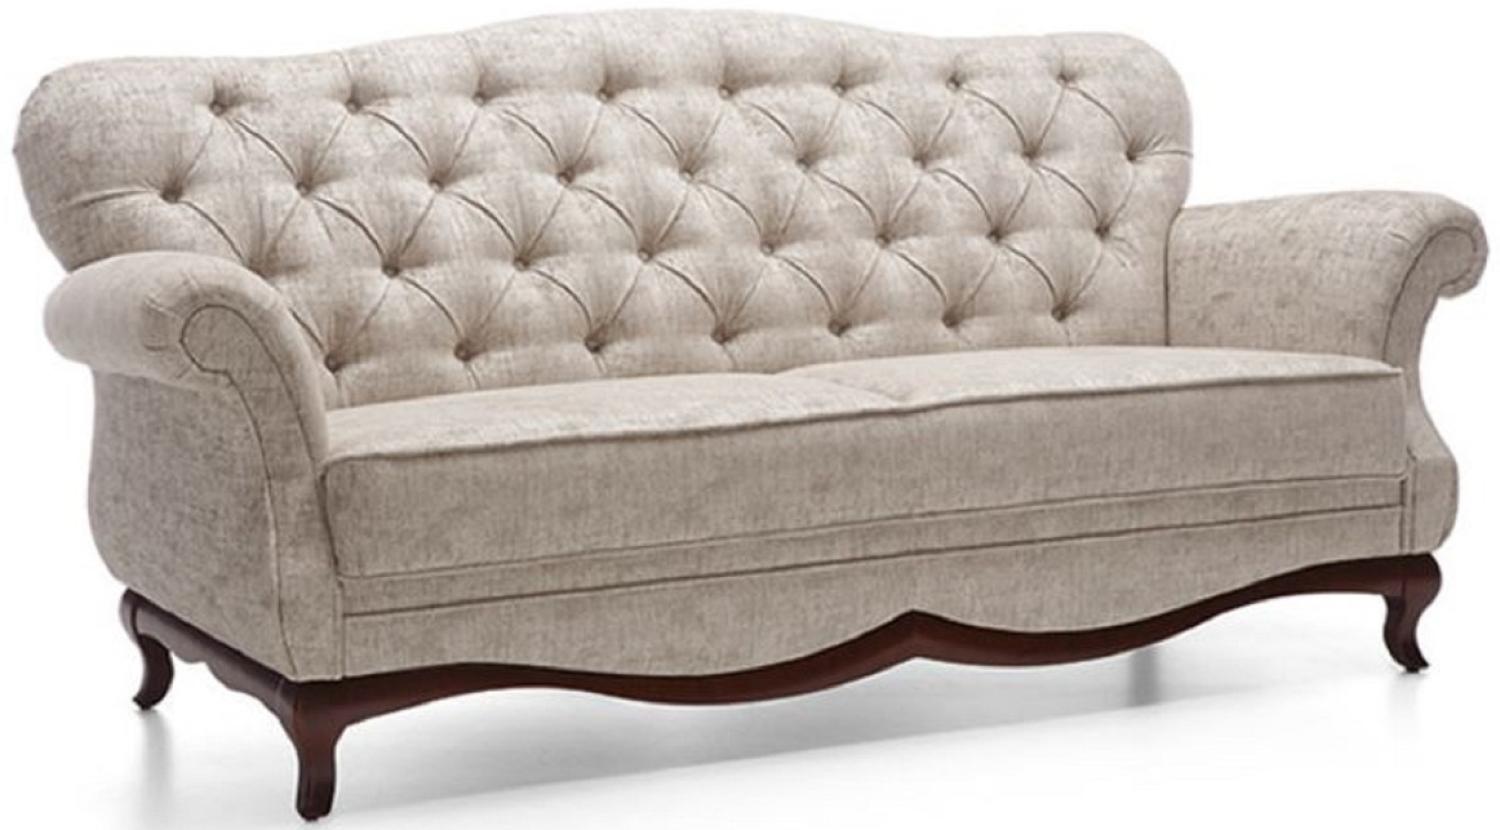 Casa Padrino Luxus Art Deco Chesterfield Wohnzimmer Sofa Greige / Dunkelbraun 206 x 90 x H. 98 cm Bild 1